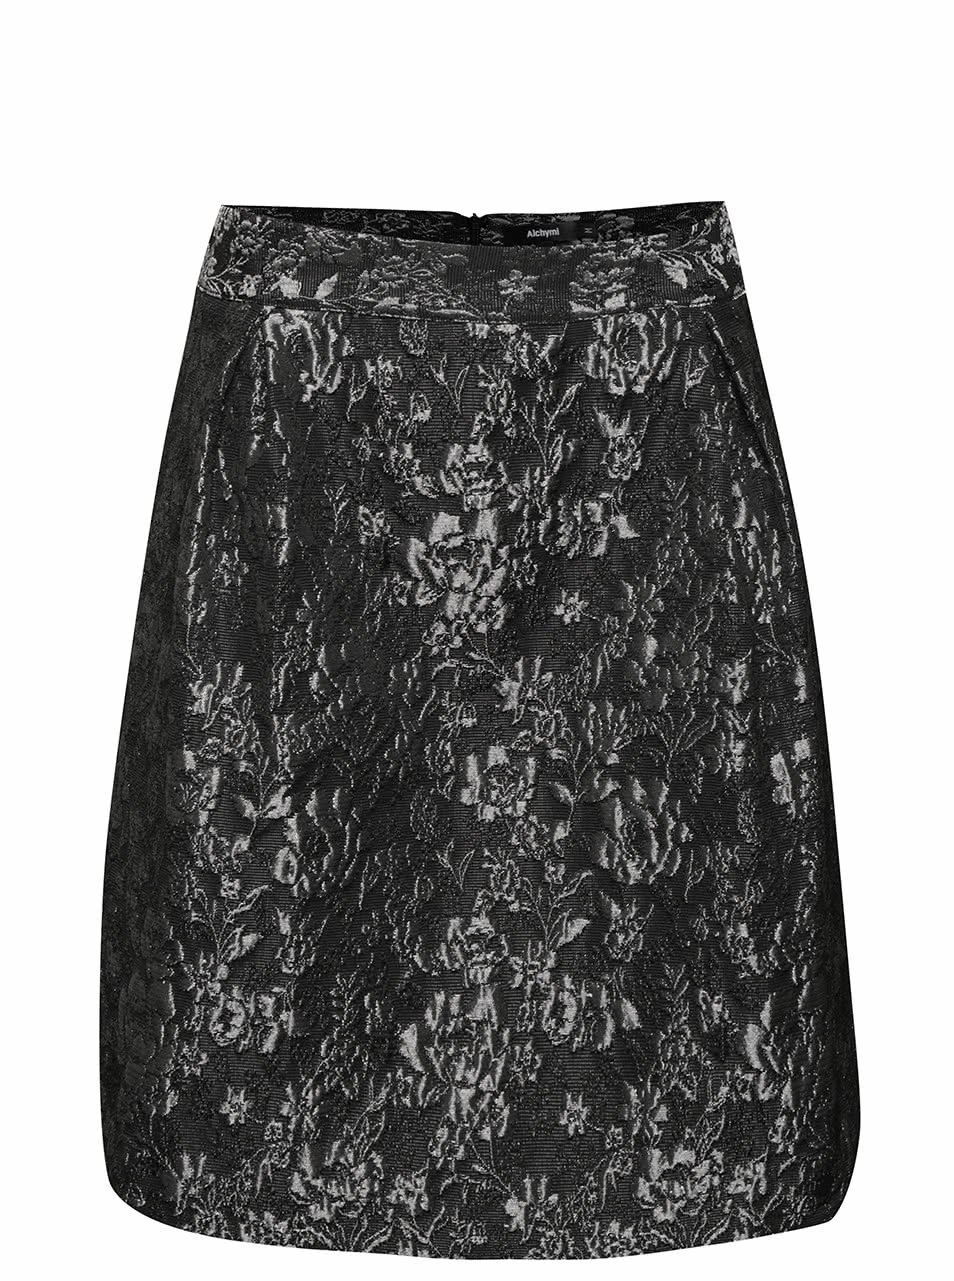 Šedo-černá sukně s lesklou výšivkou květin Alchymi Inna